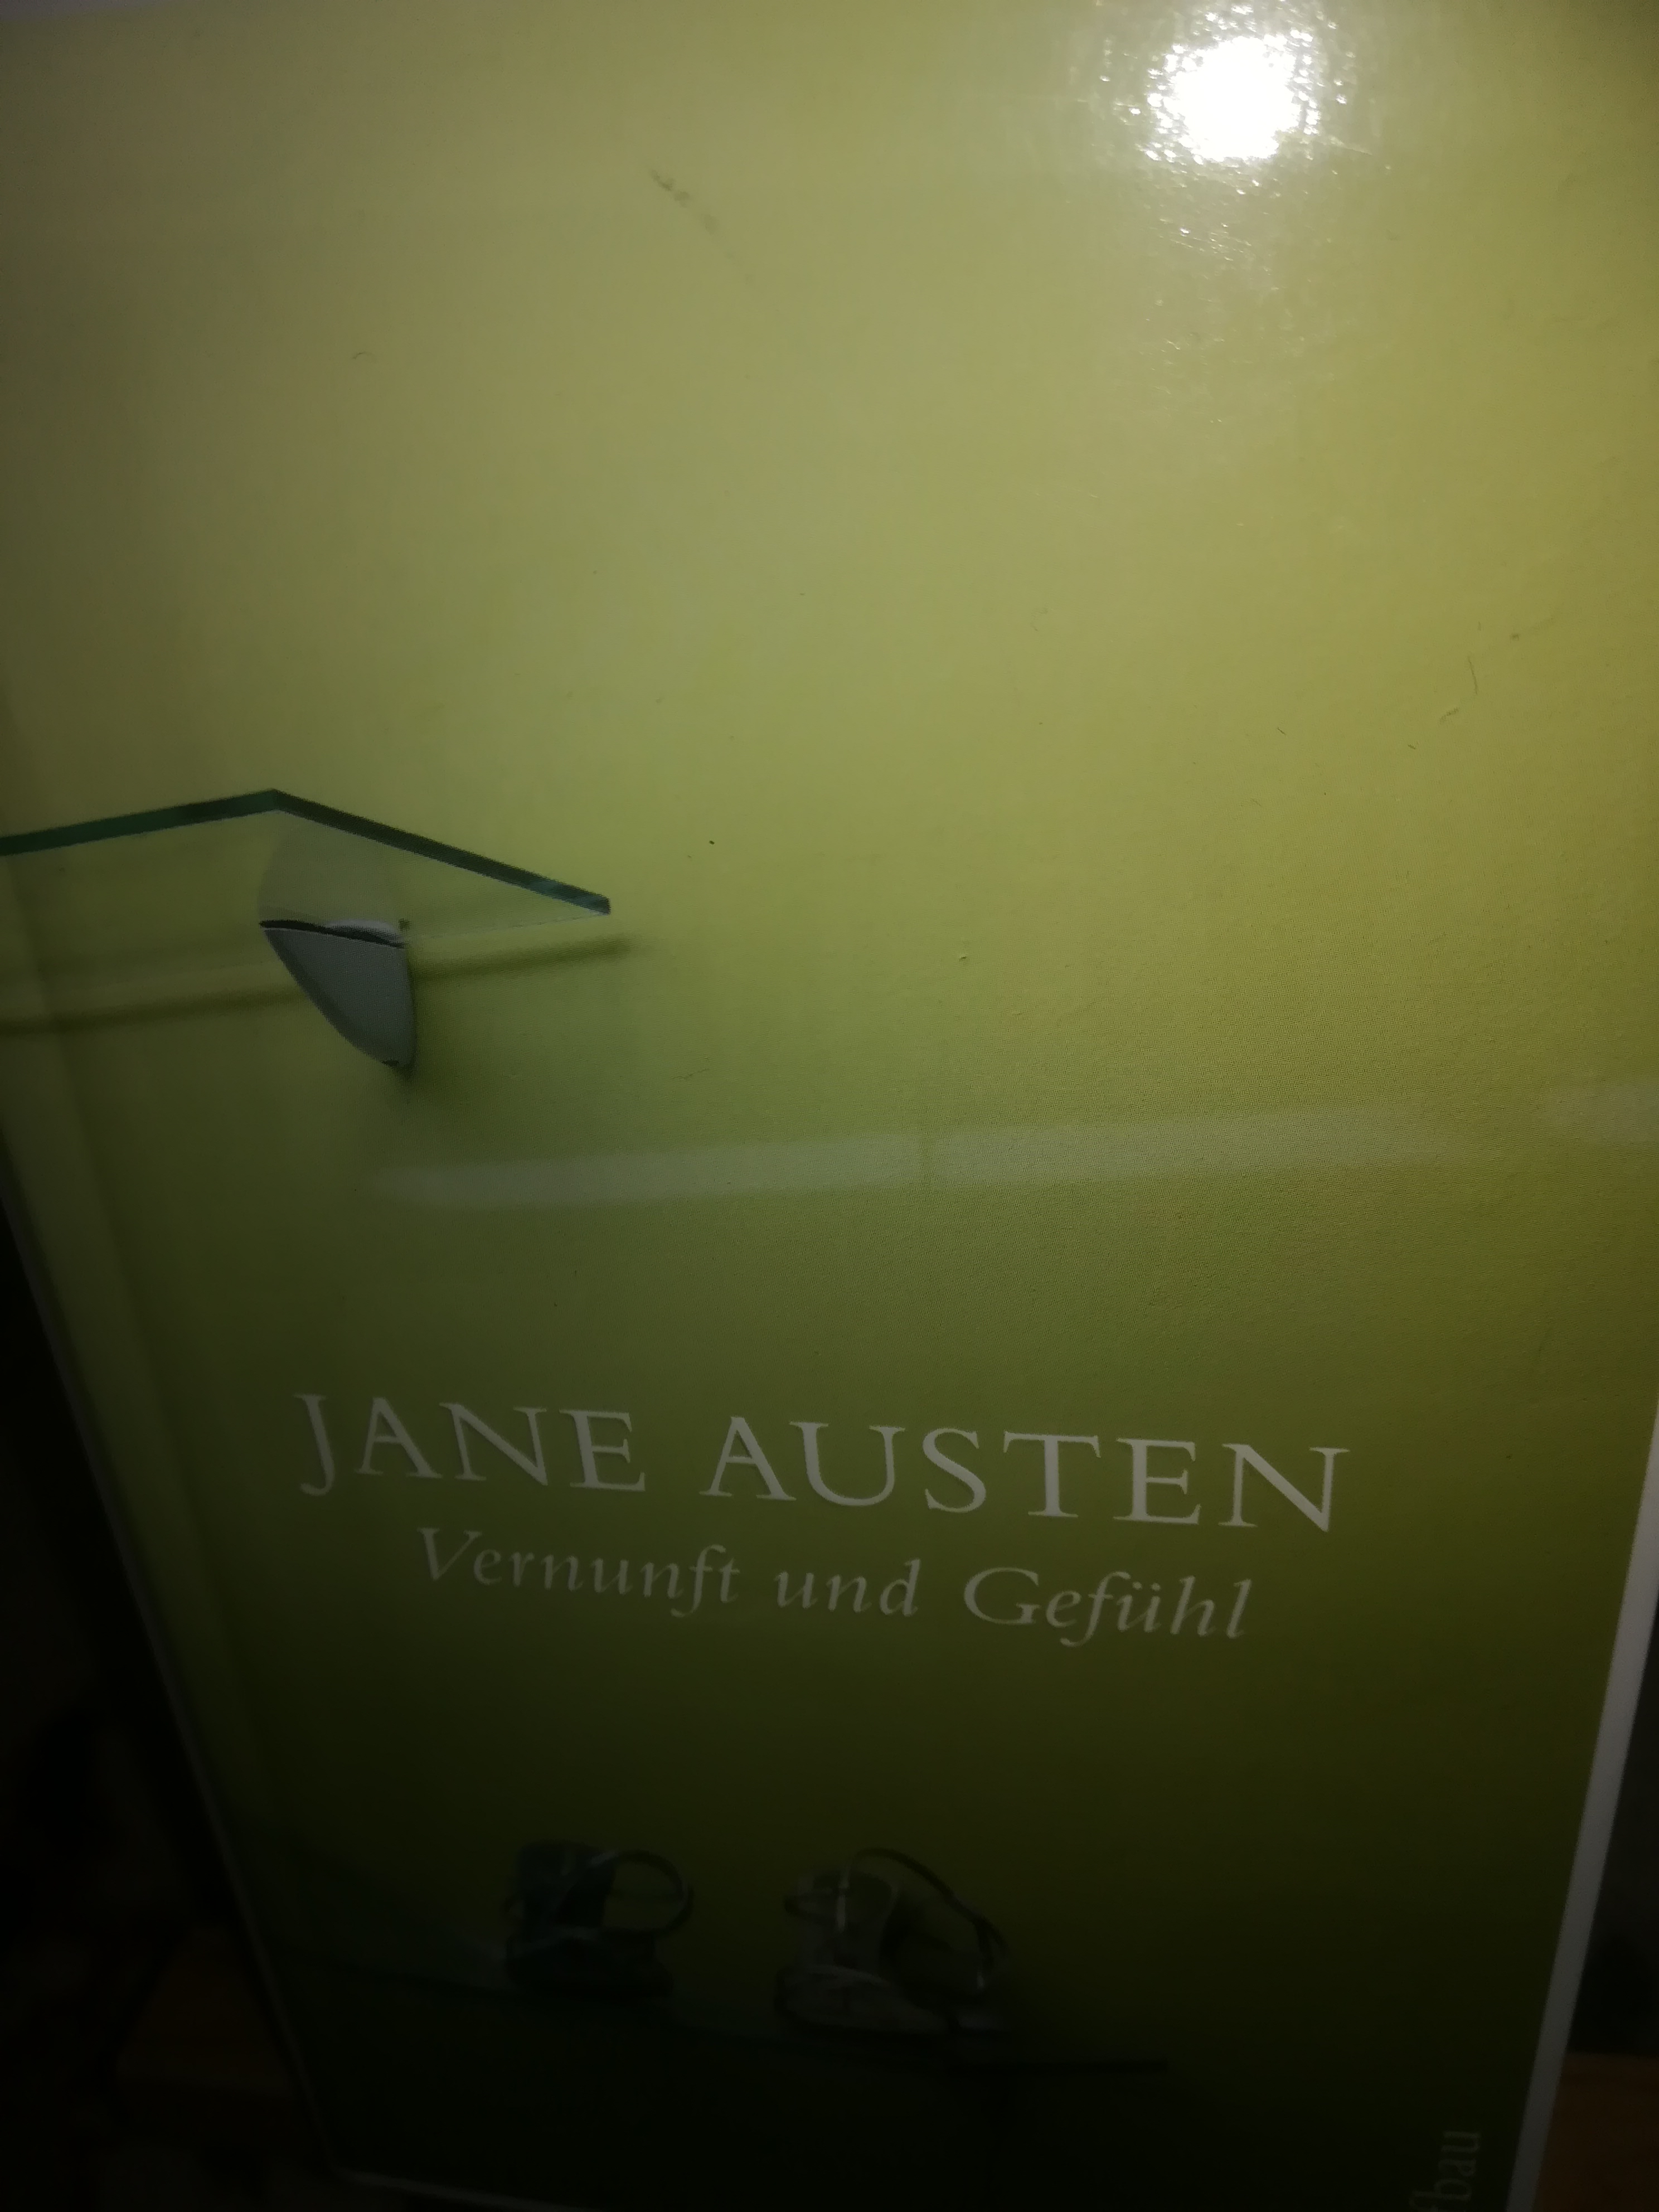 Vernunft und Gefühl - Austen Jane